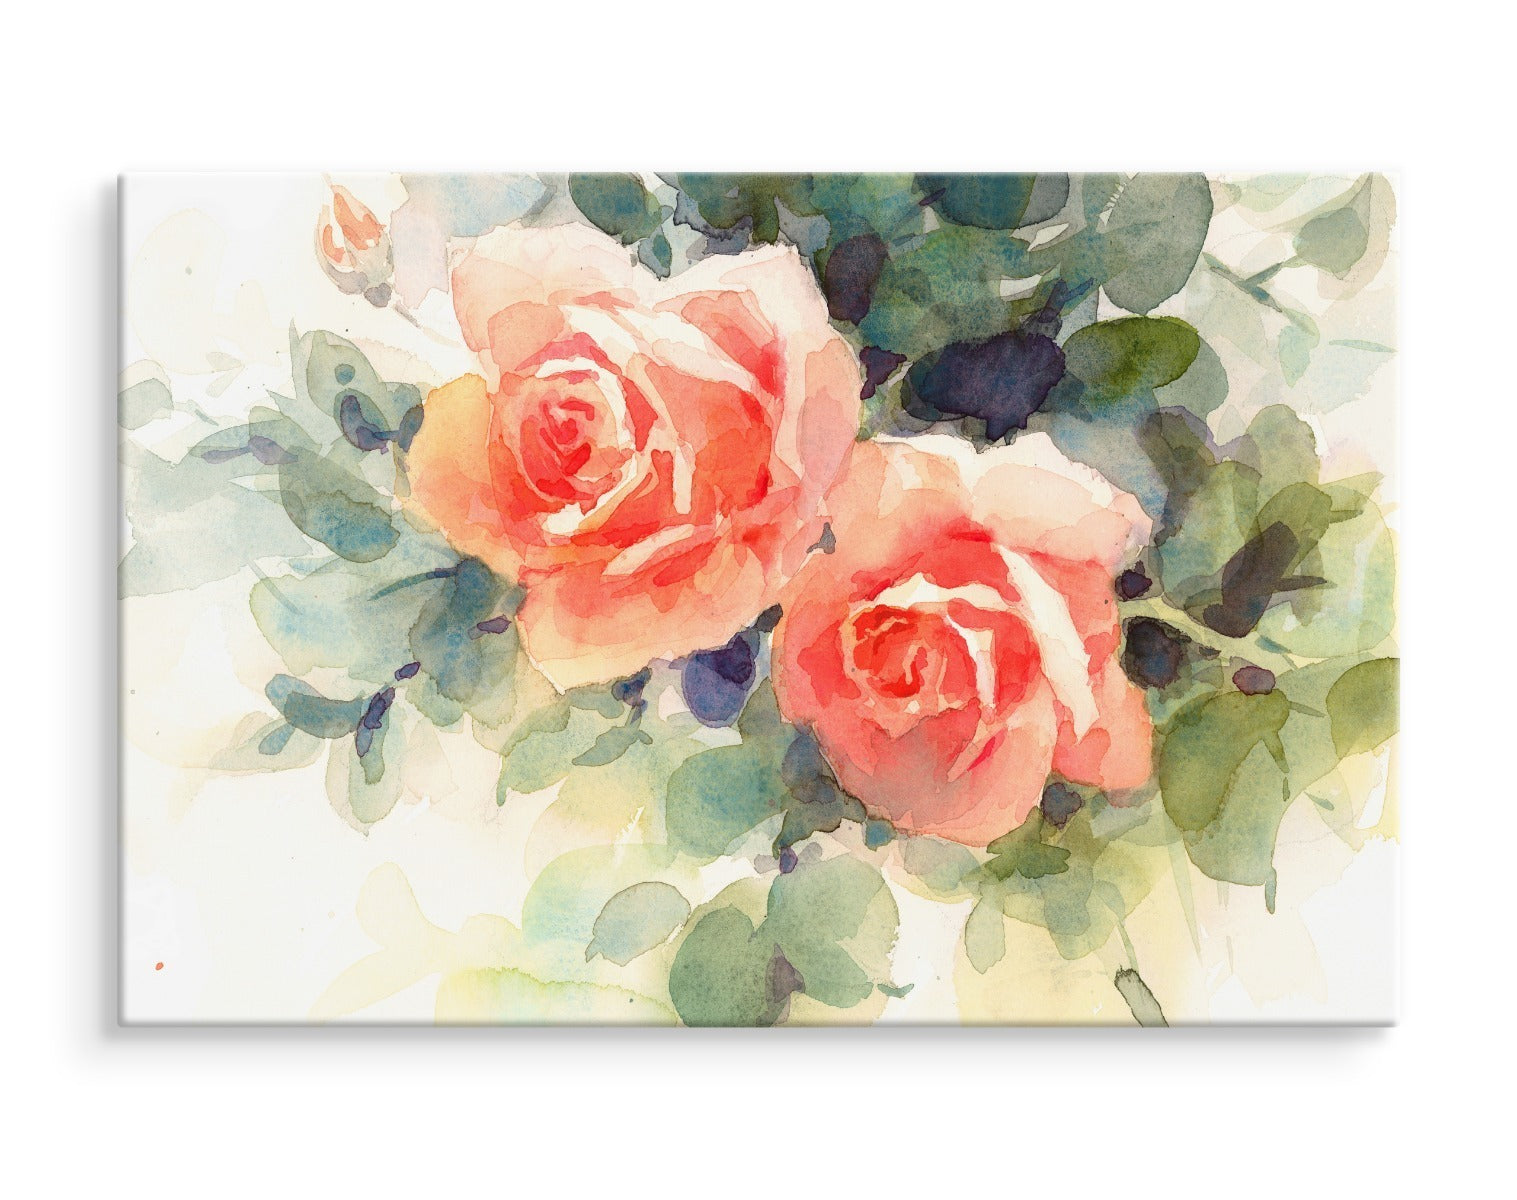 Vakre fargerike roser malt i akvarell